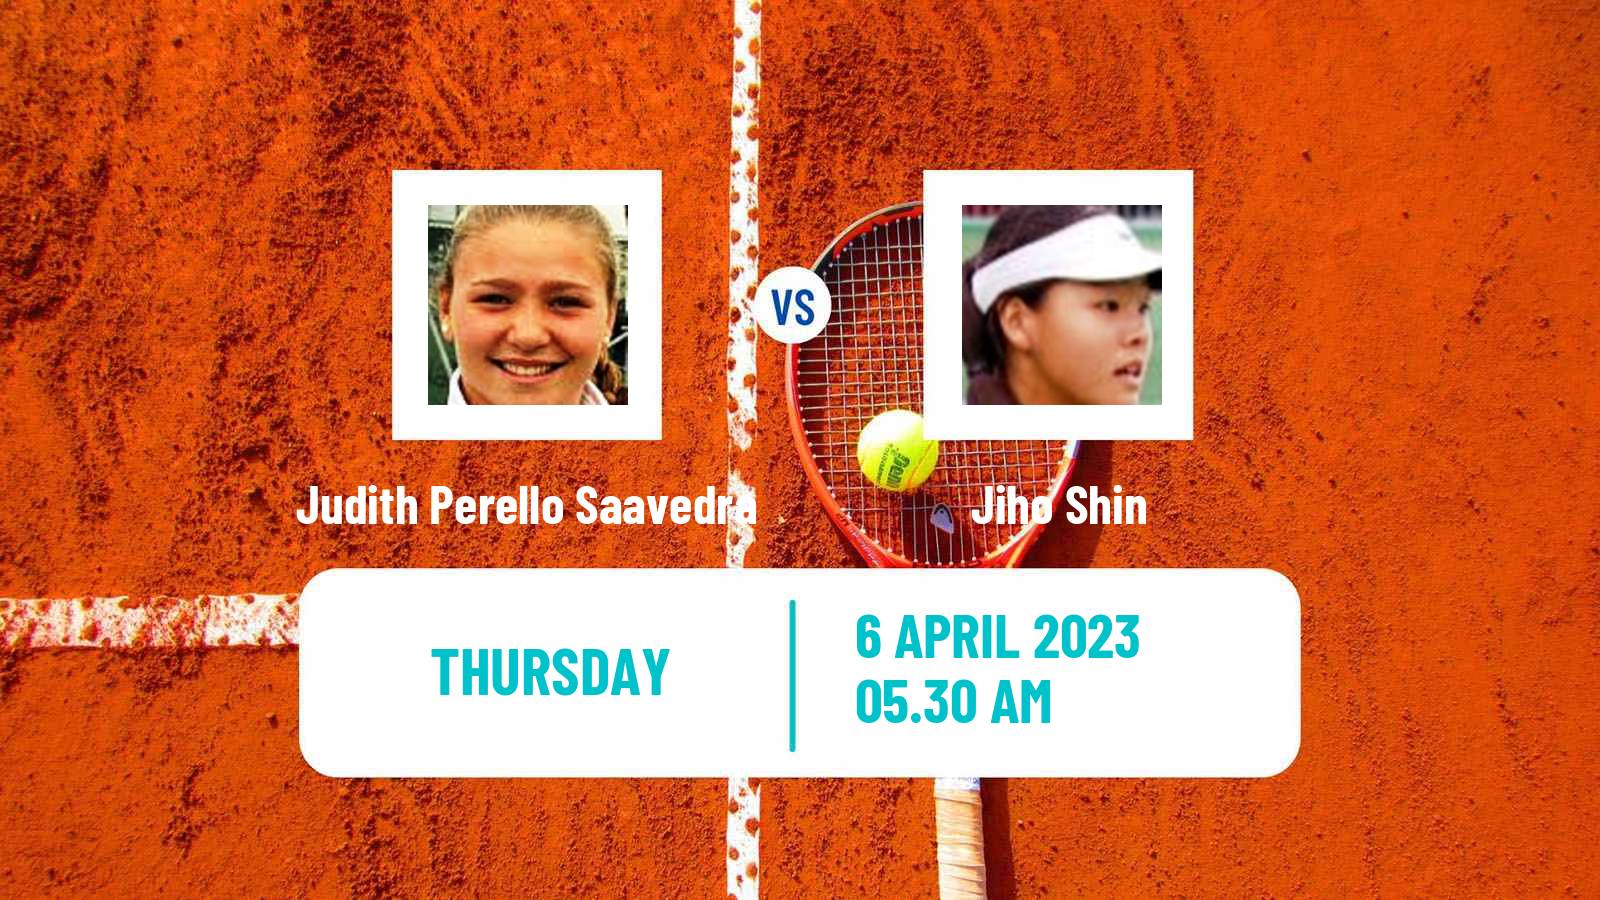 Tennis ITF Tournaments Judith Perello Saavedra - Jiho Shin